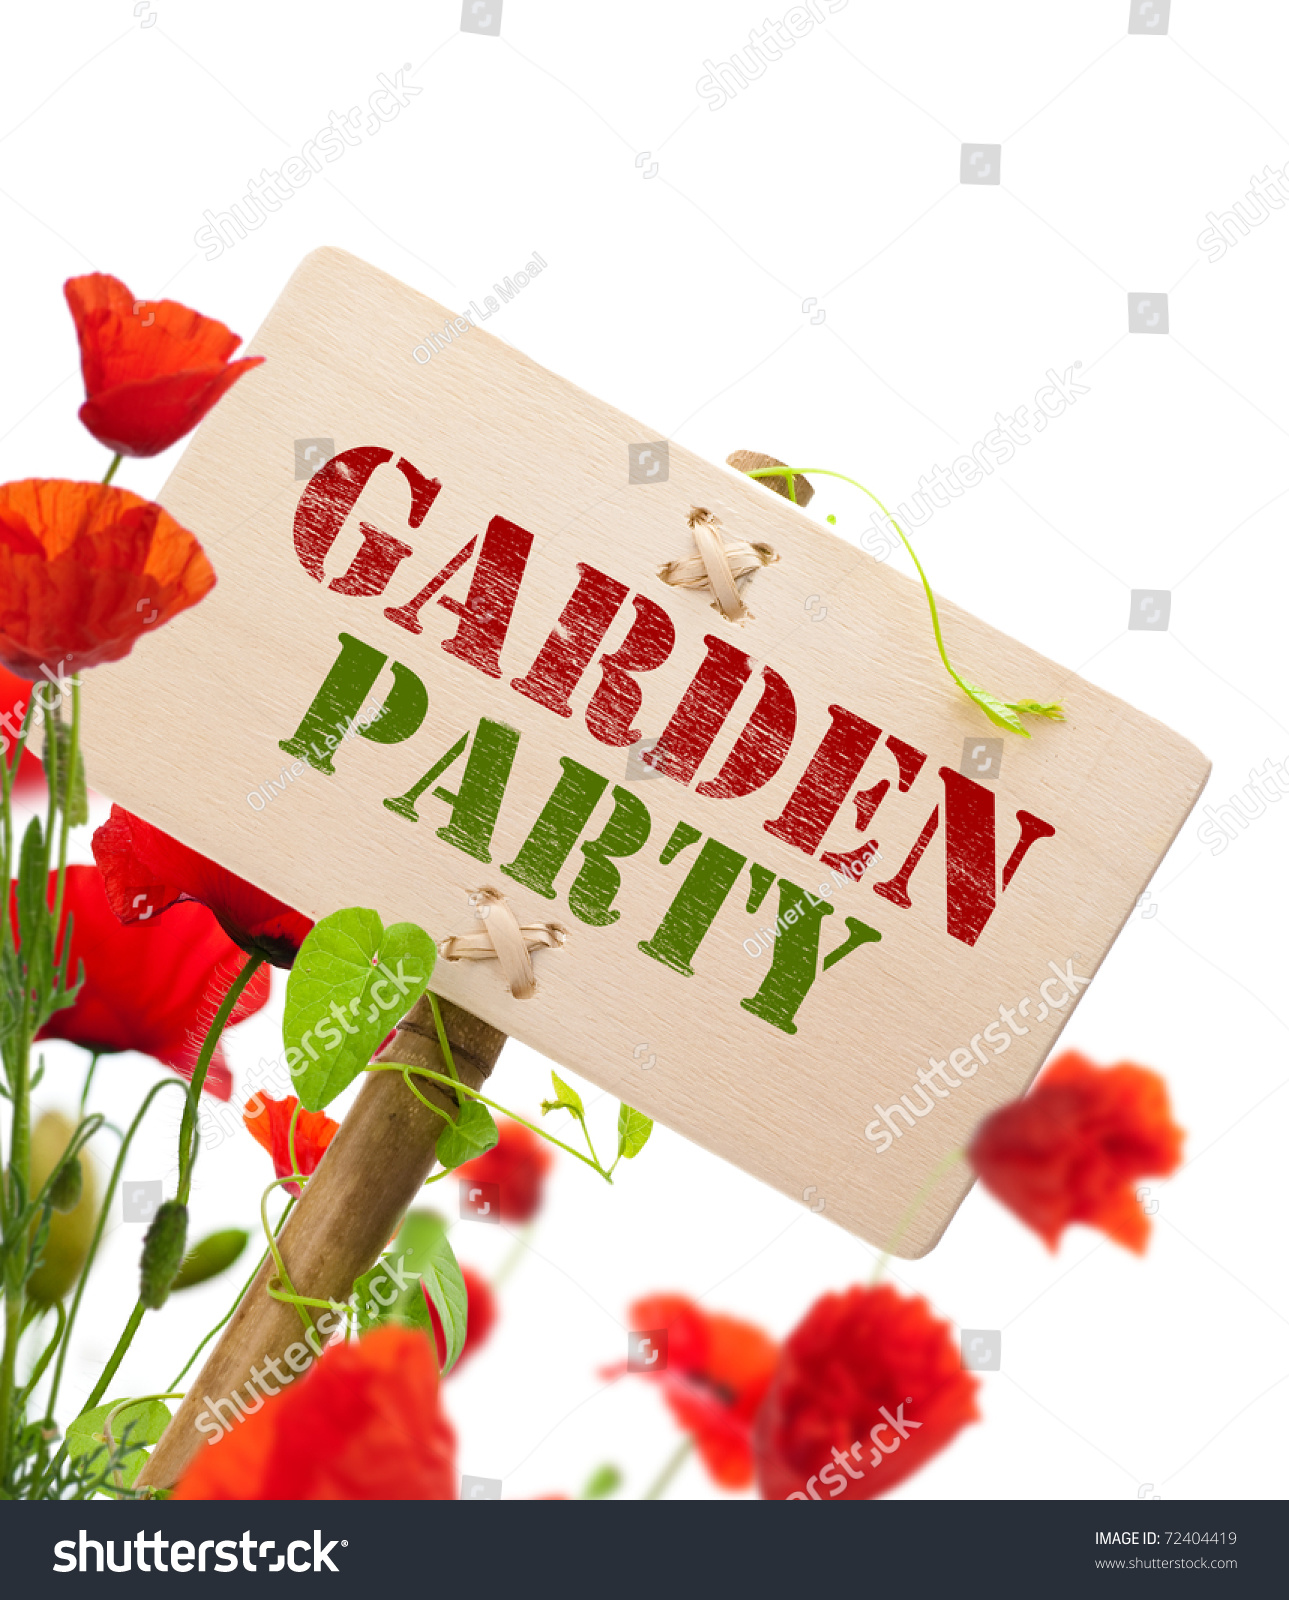 clipart garden party - photo #9